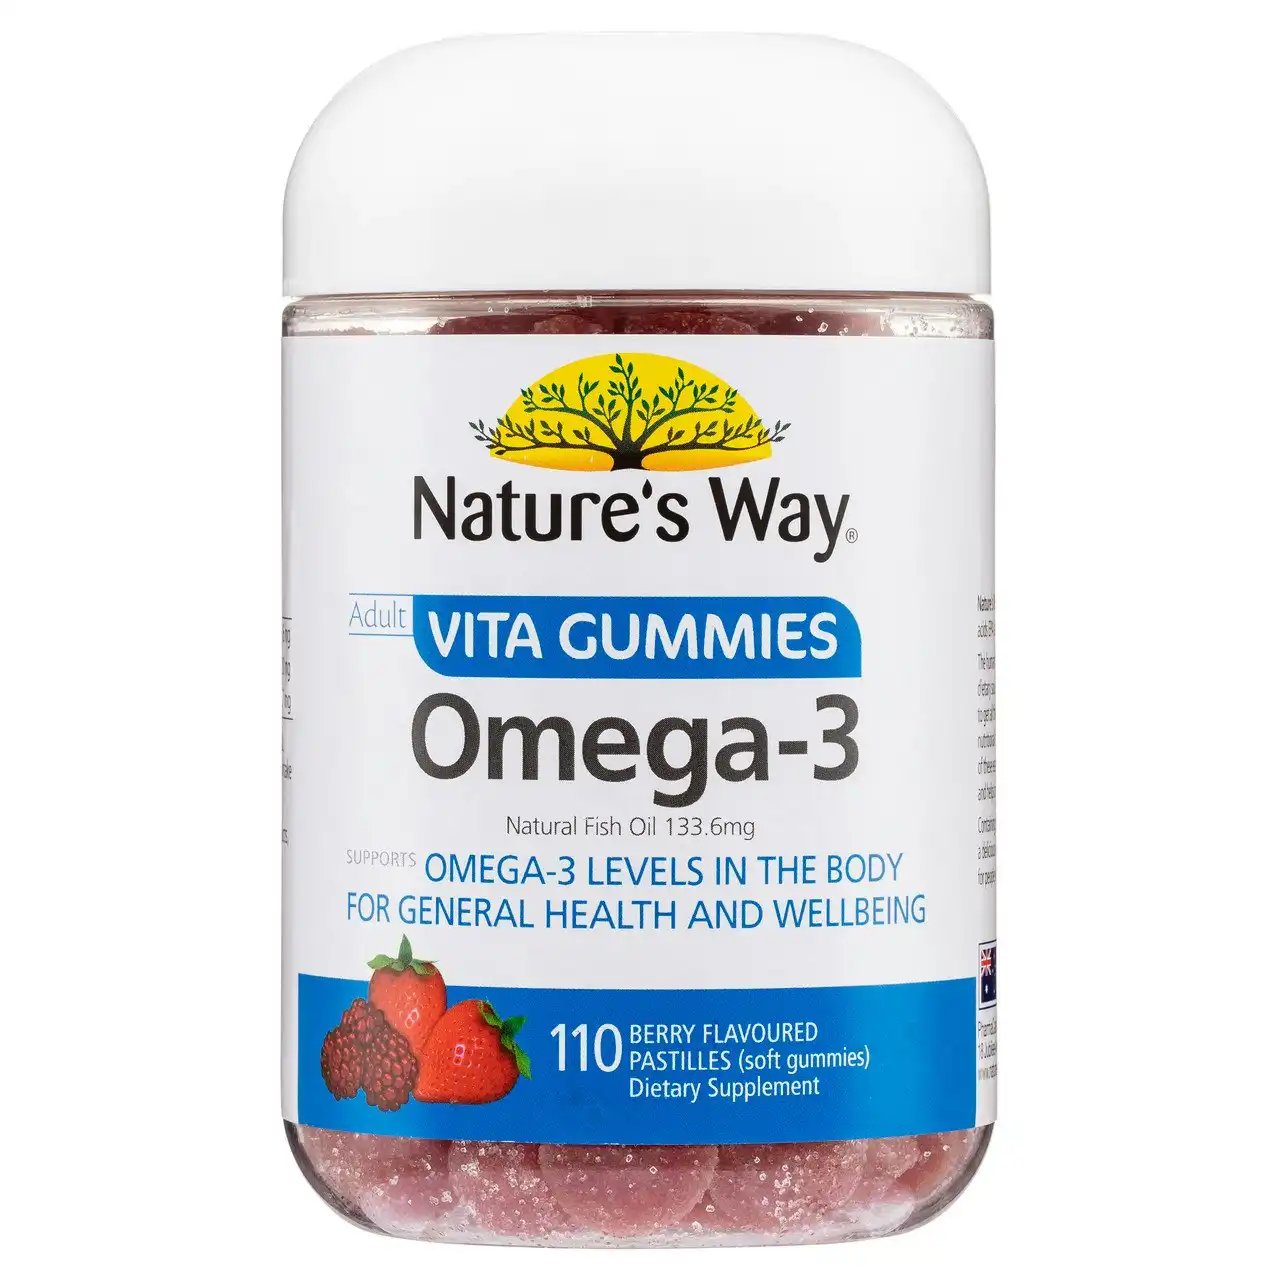 Nature's Way Adult Vita Gummies Omega-3 110's